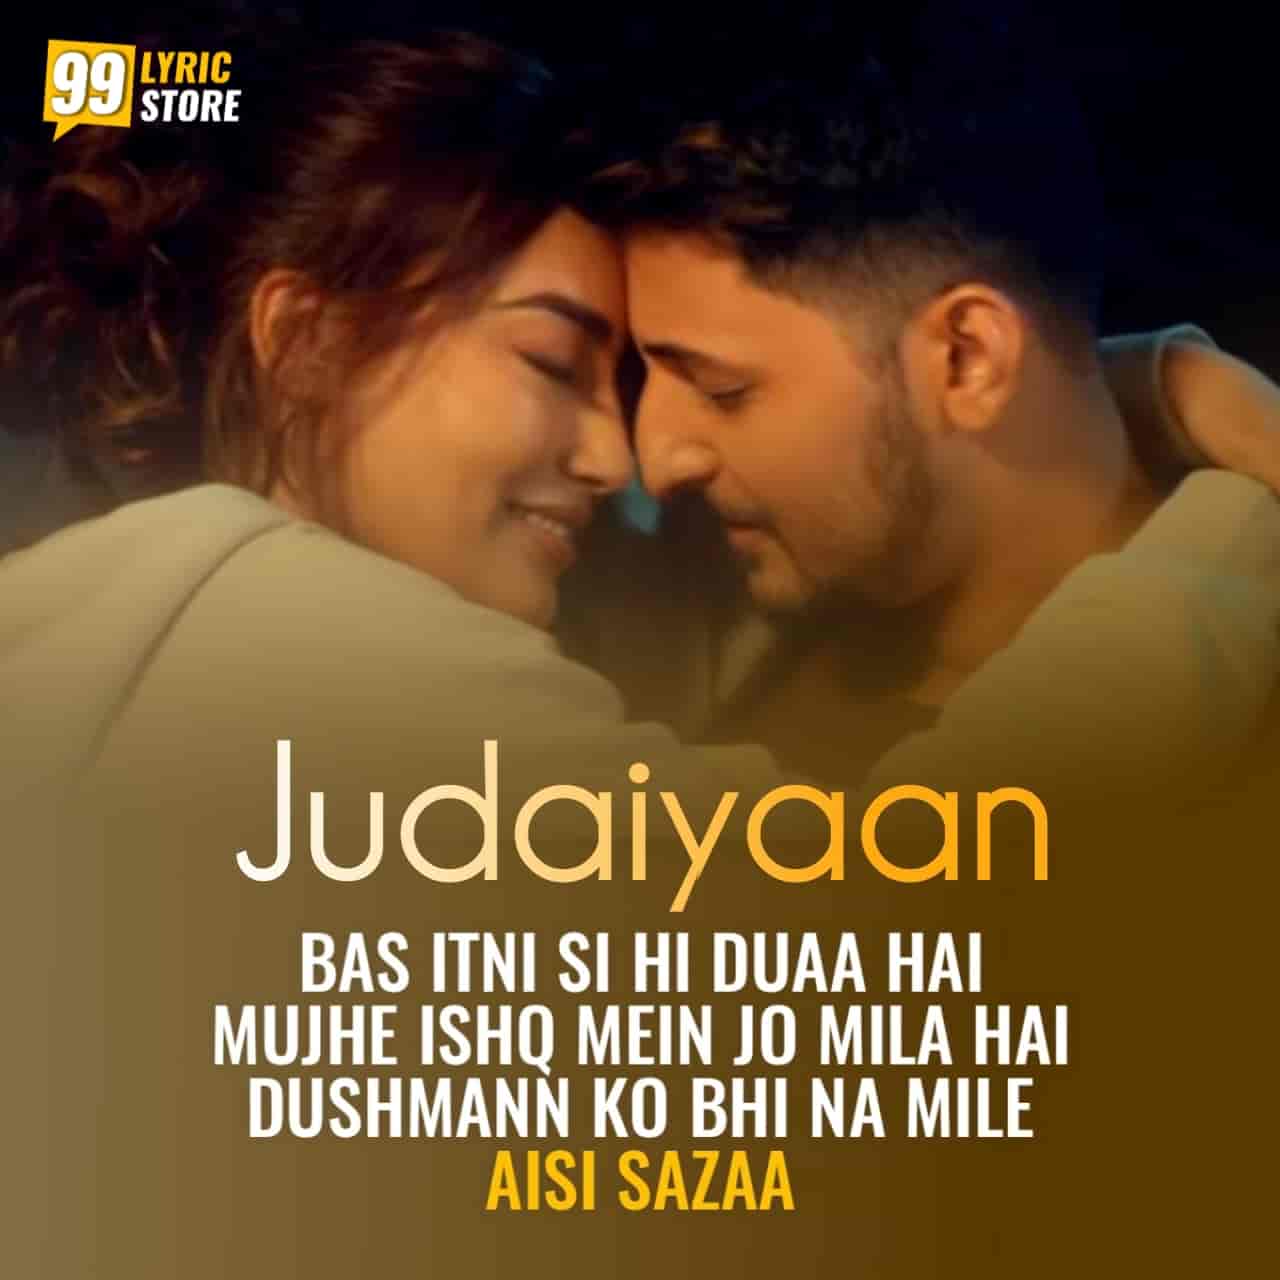 Judaiyaan Hindi Song Image Features Darshan Raval and Surbhi Jyoti